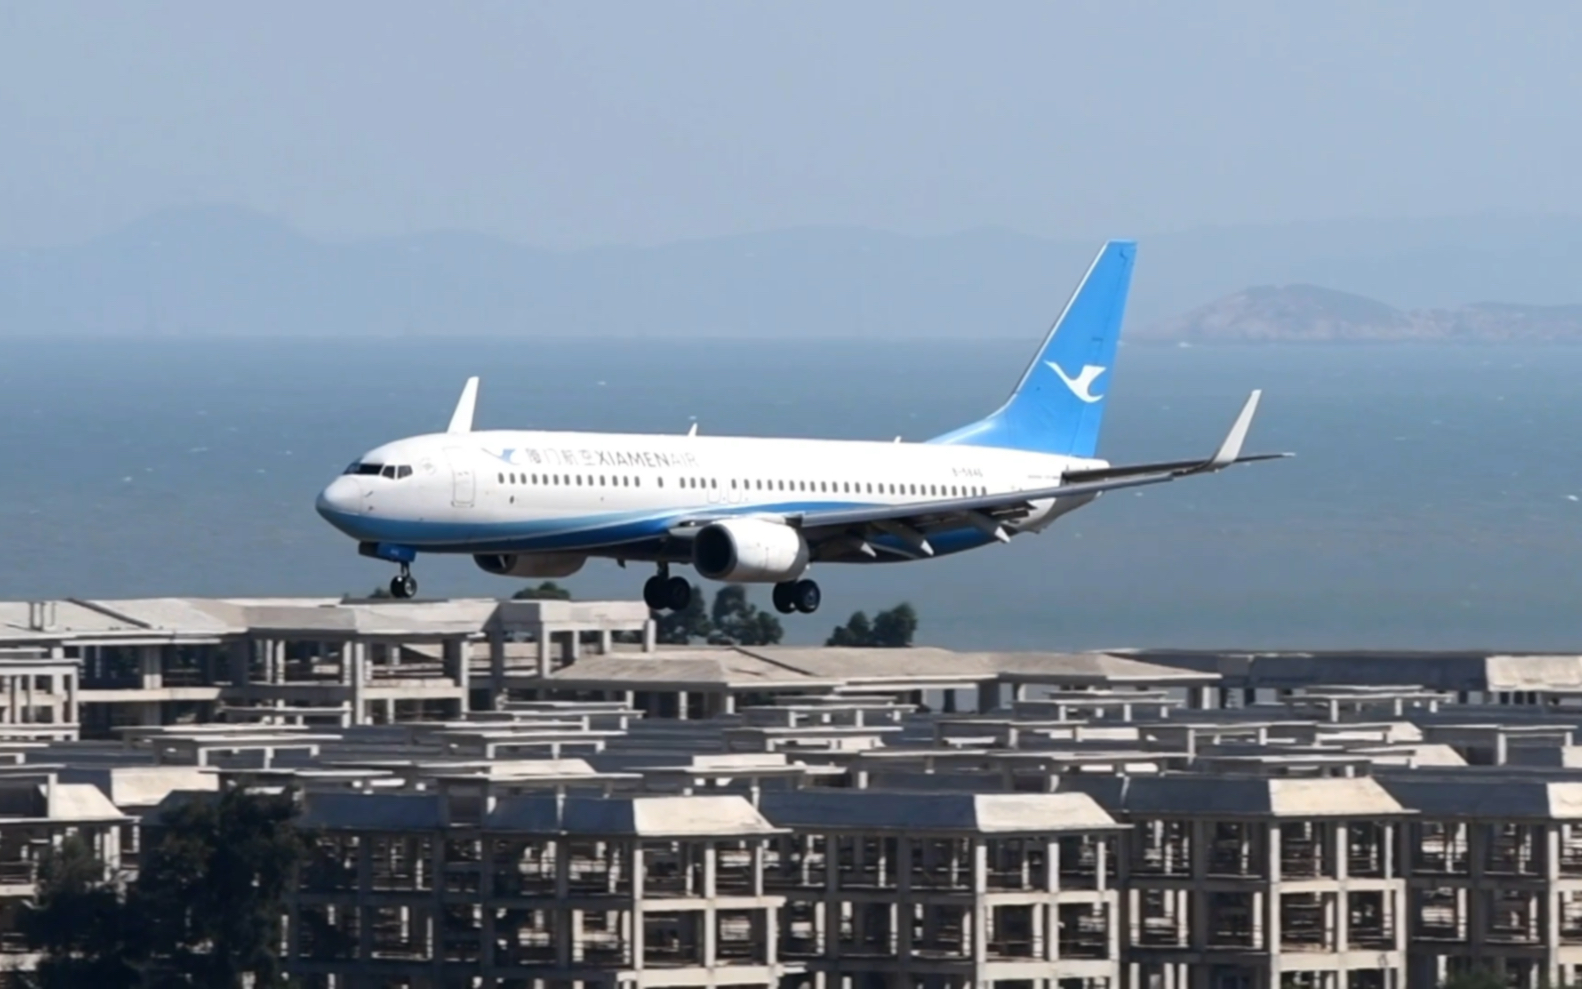 【原声】厦门航空波音737-800落地福州长乐机场